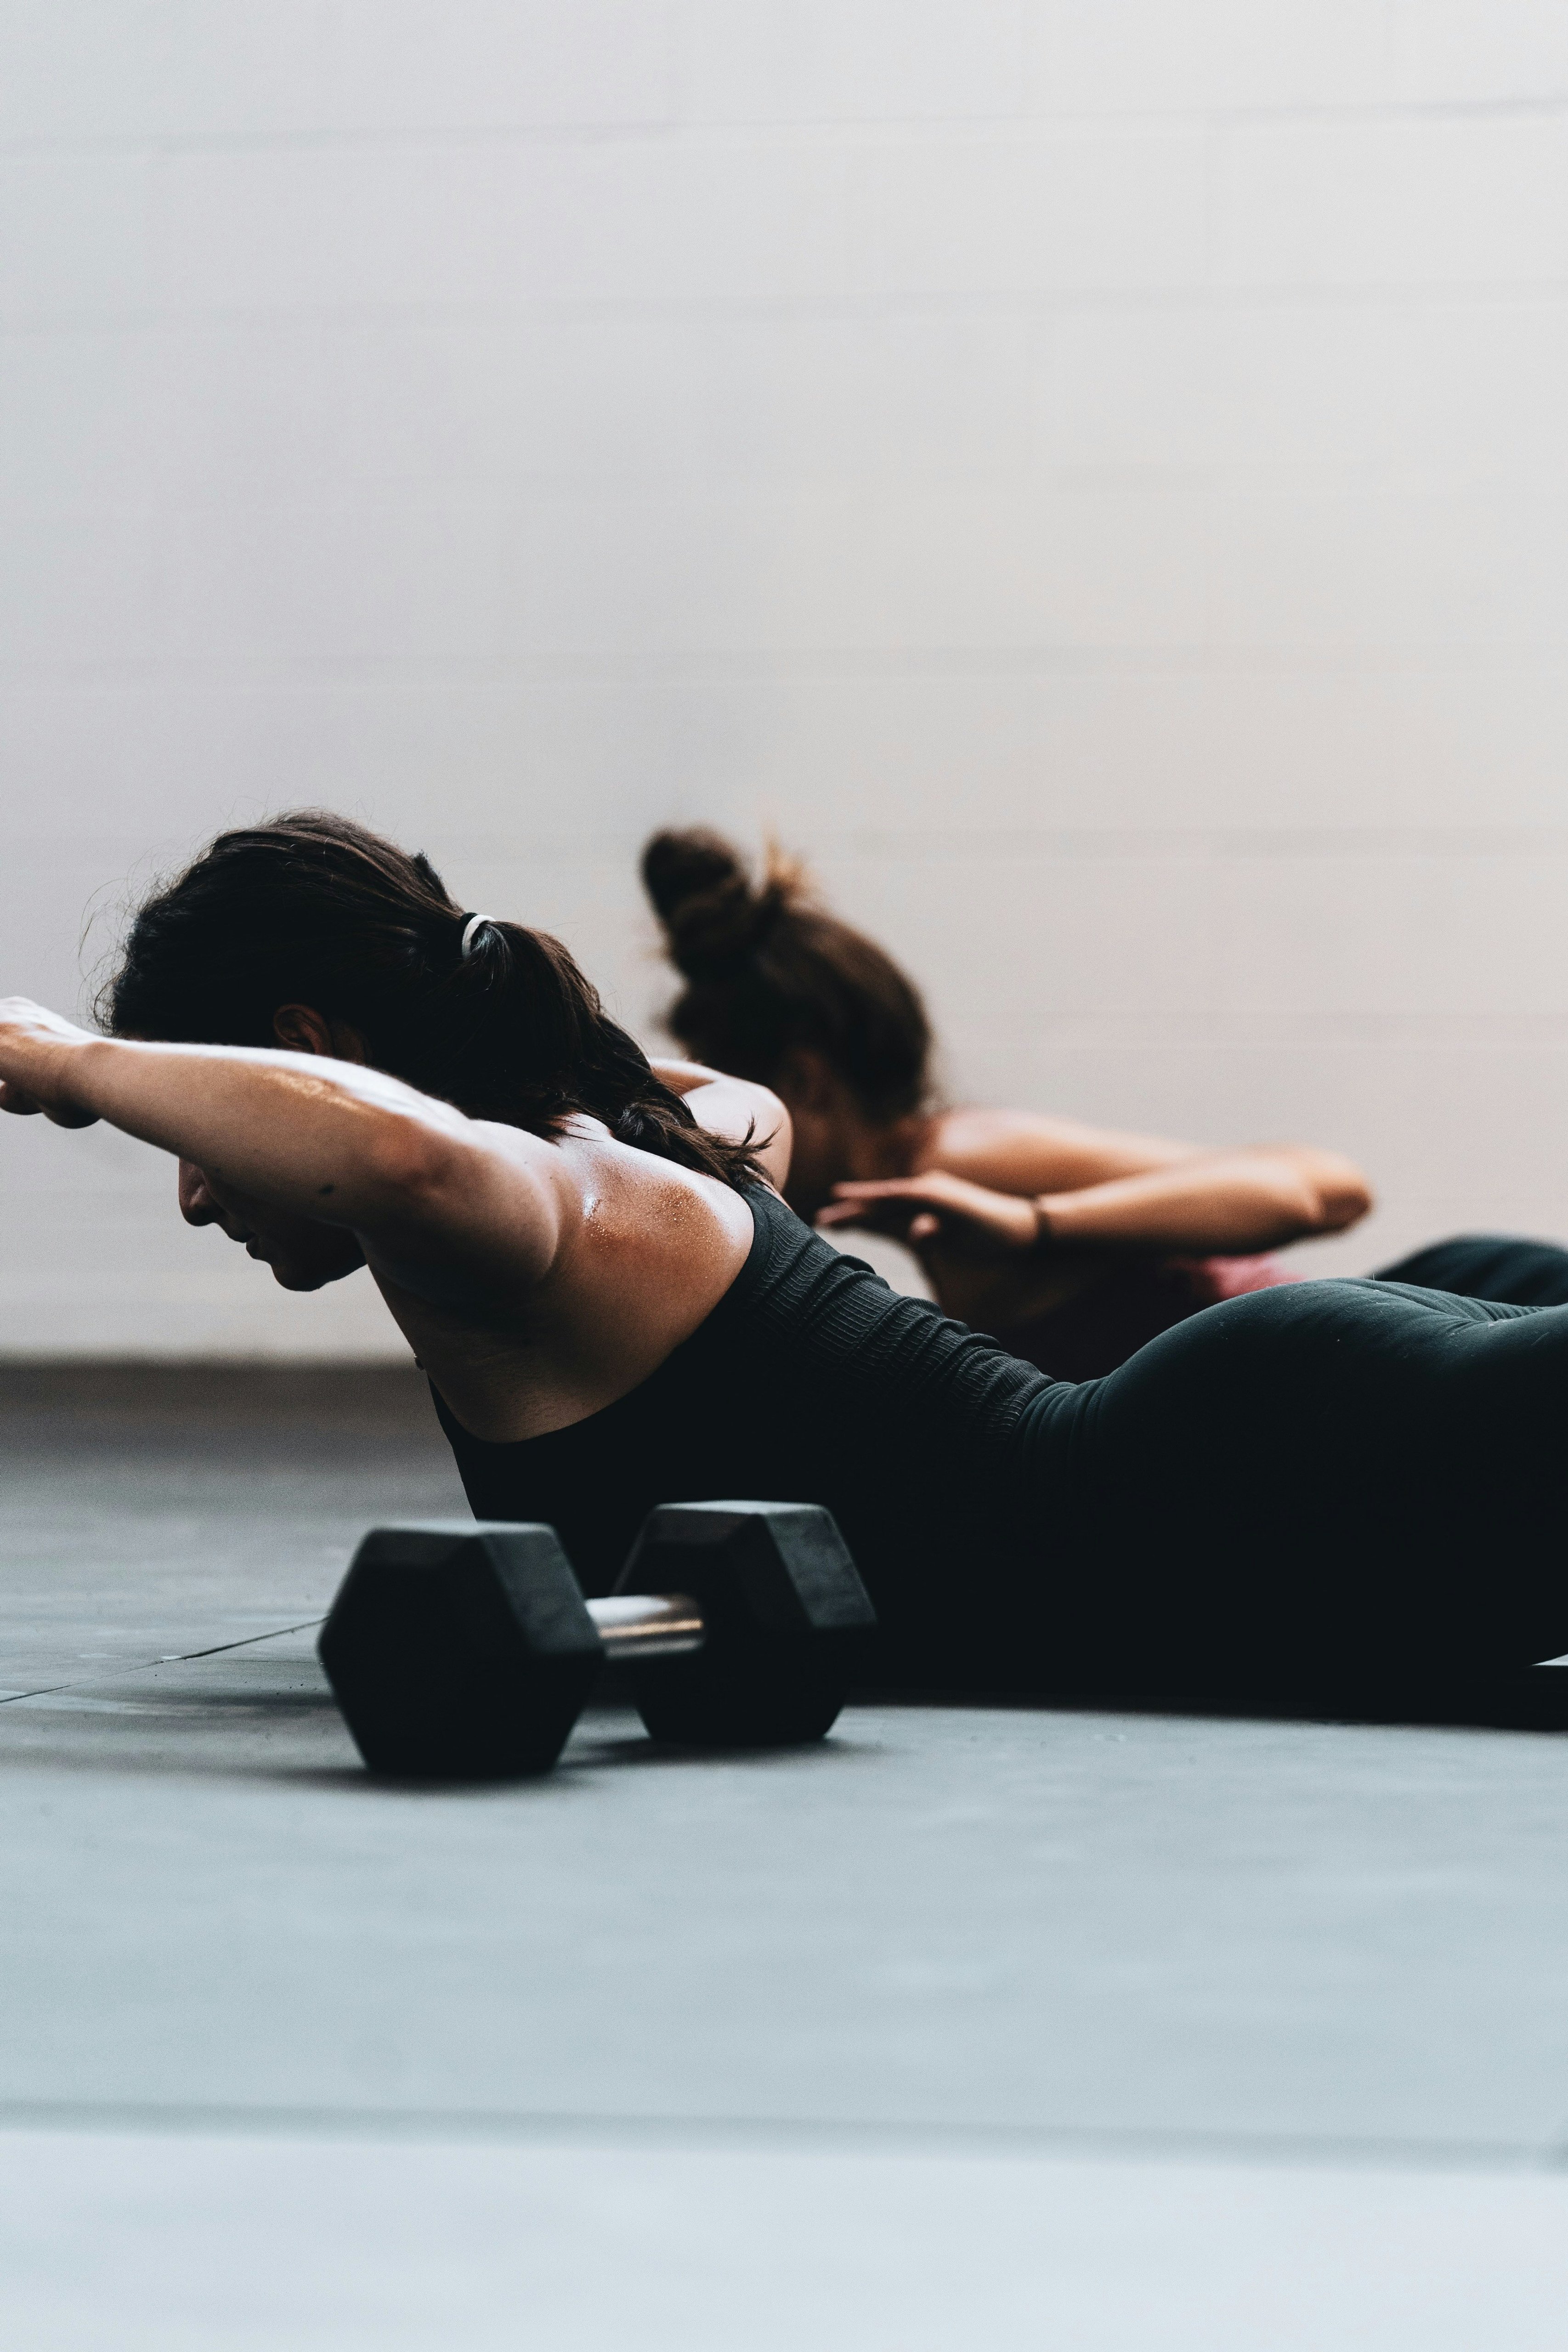 Kvinnor ligger på mage och lyfter armarna i en övning, med en hantel i förgrunden